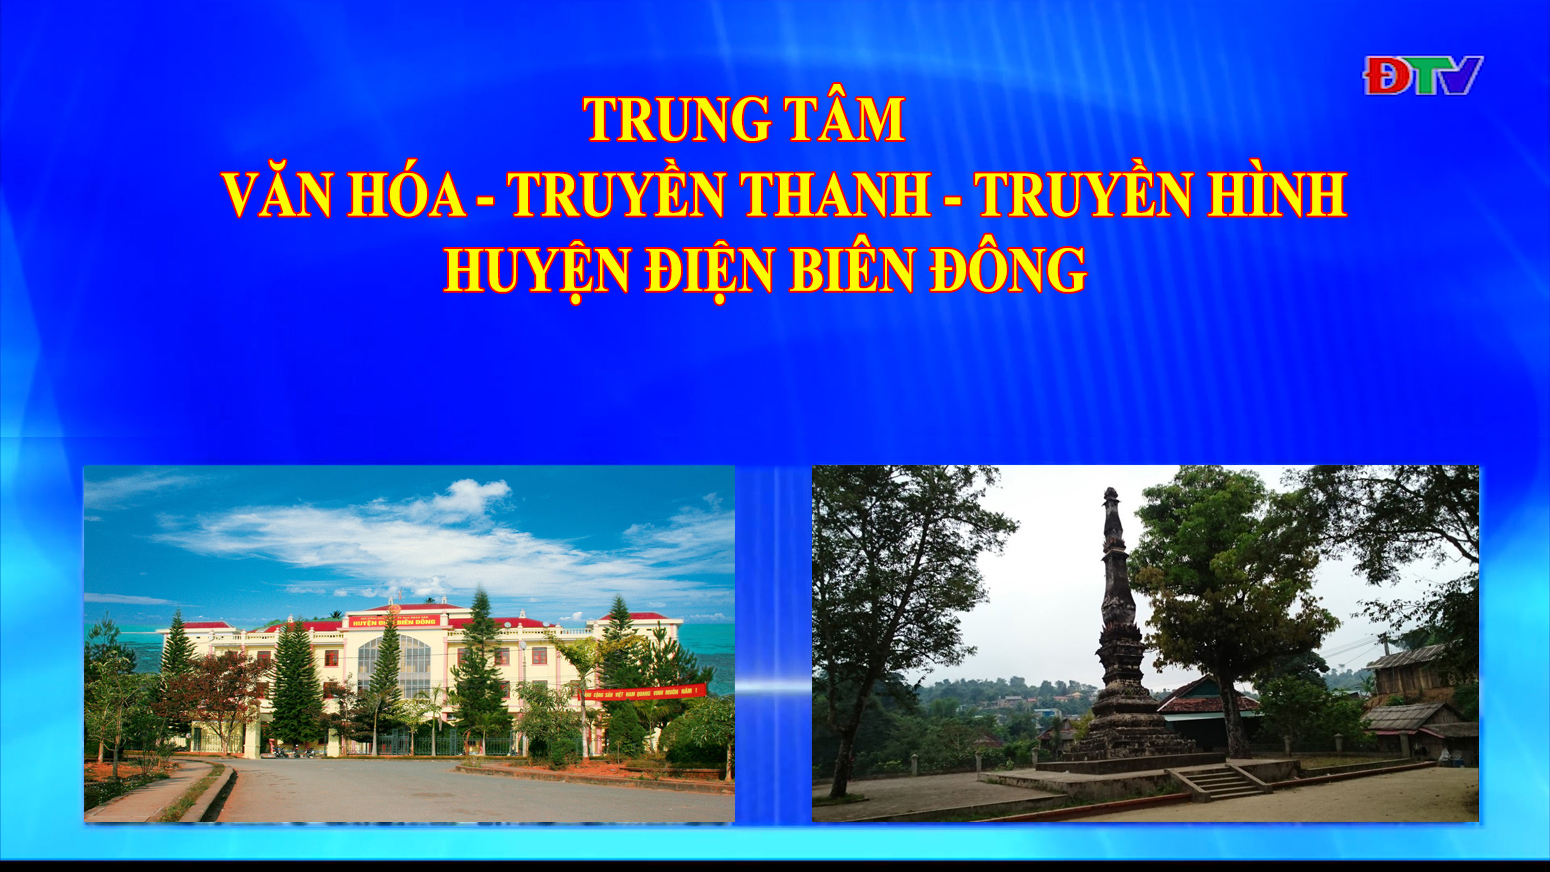 Trung tâm VH-TTTH huyện Điện Biên Đông (Ngày 23-10-2021)